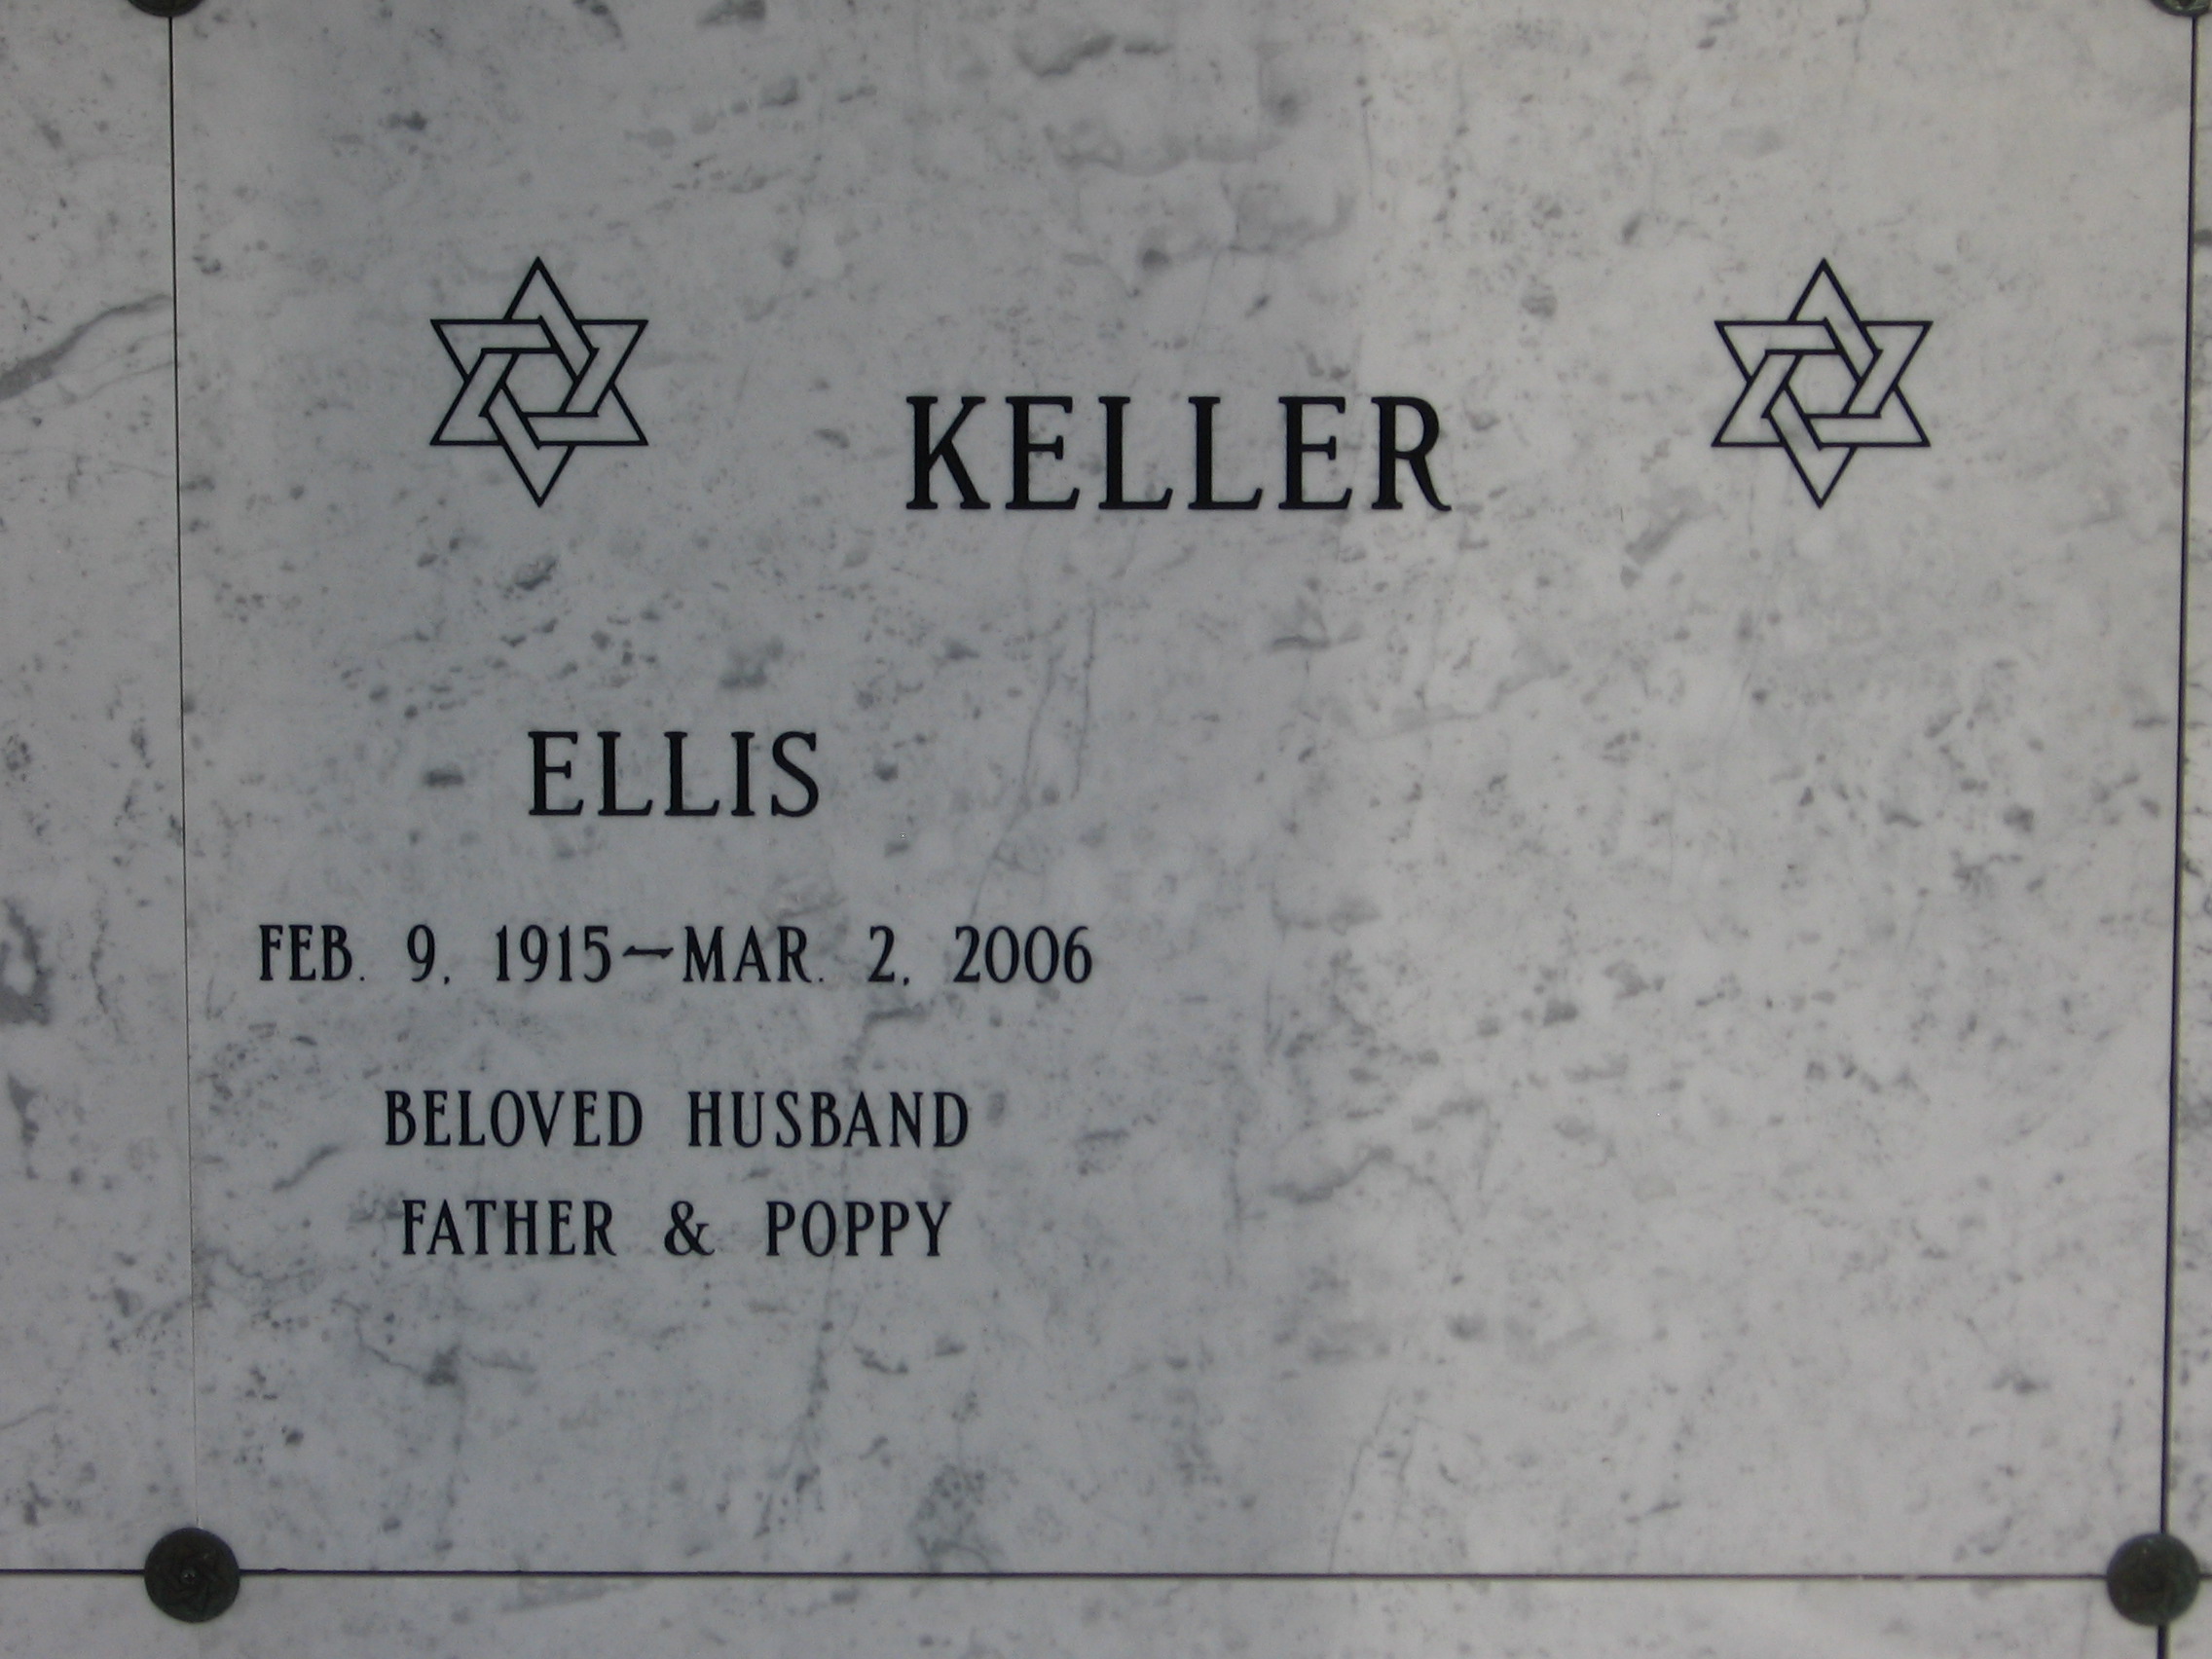 Ellis Keller